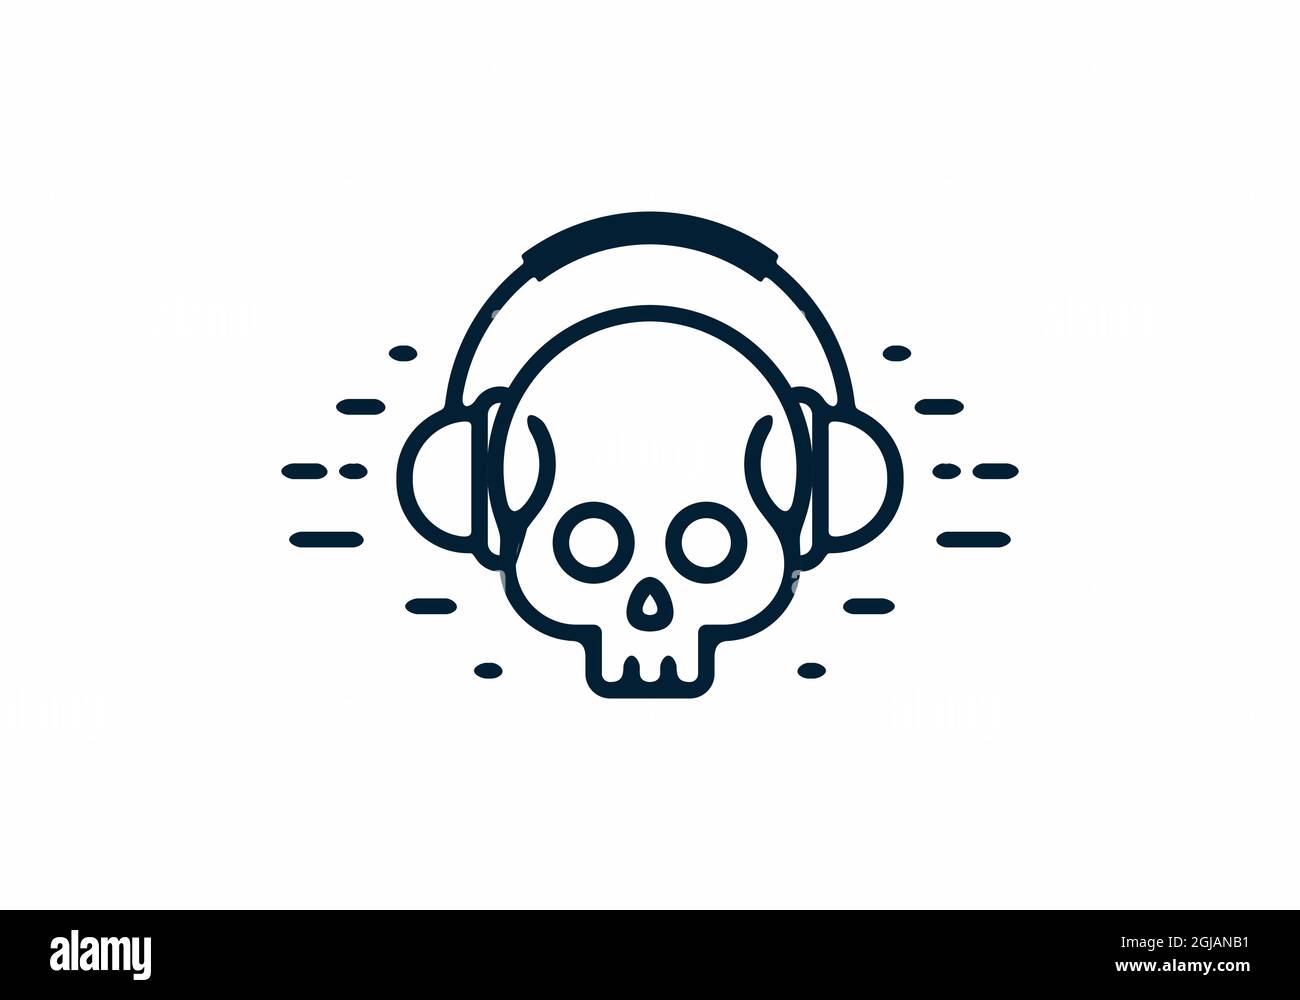 Skull with headset line art design Stock Vector